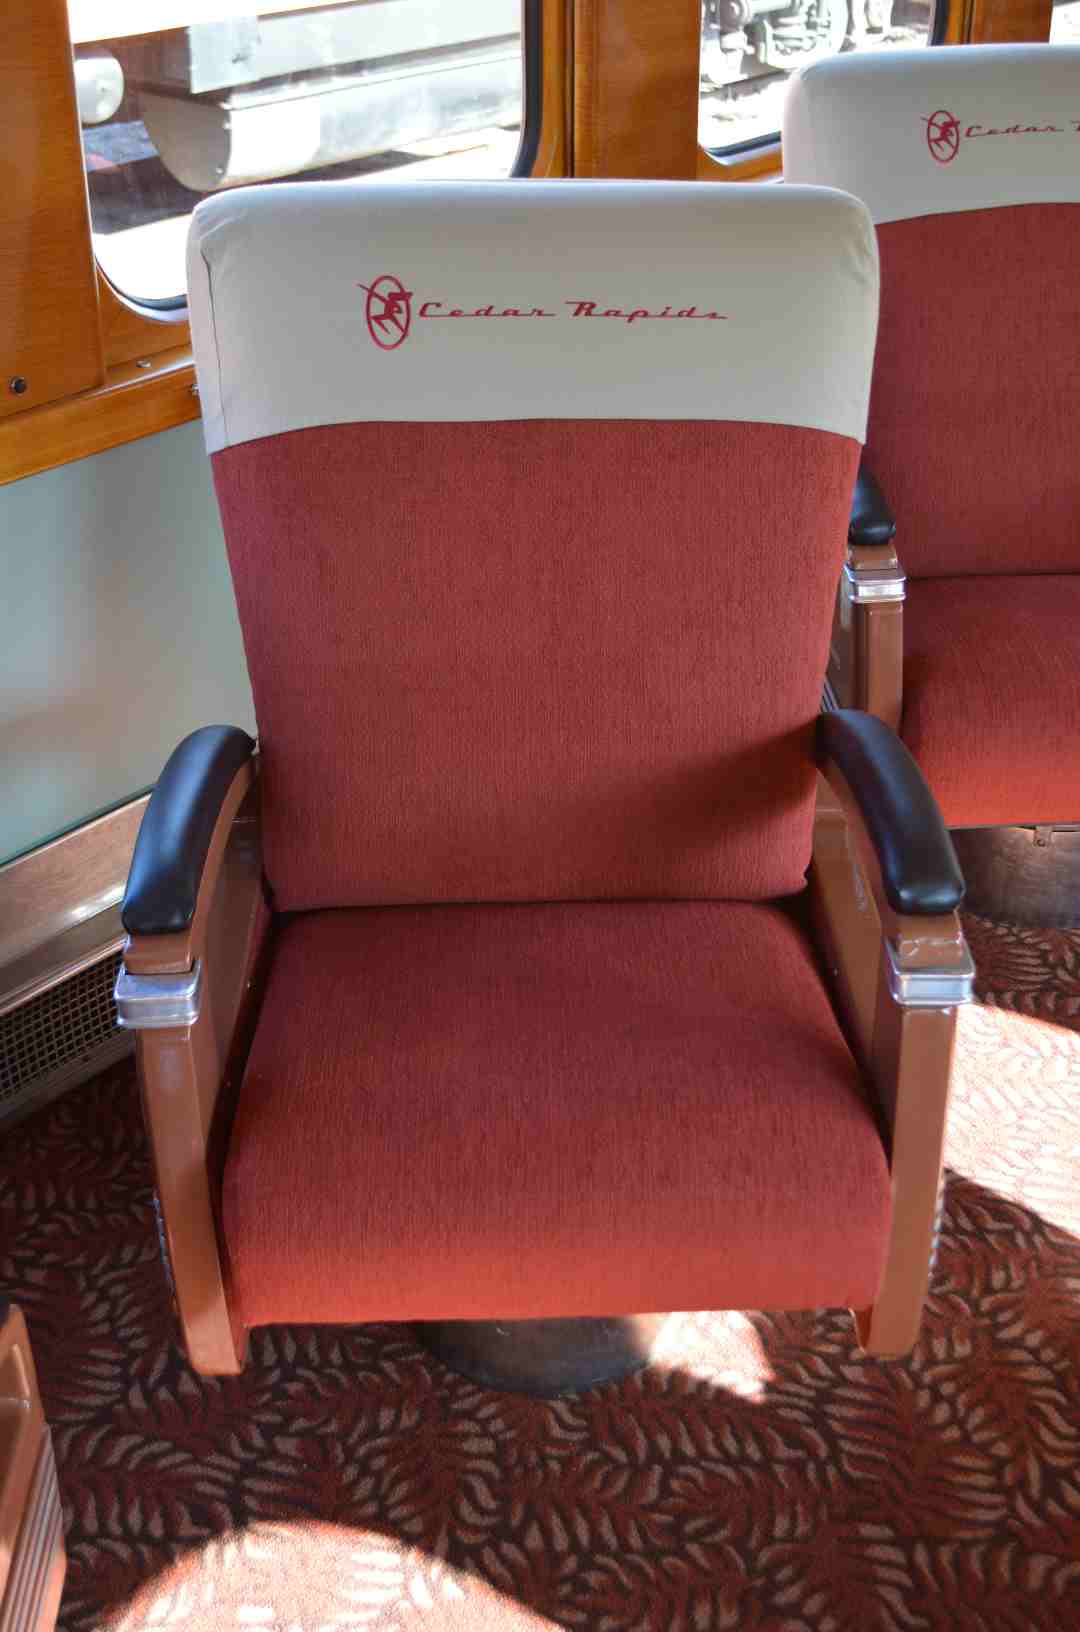 D38647  Restored parlor chair in Milwaukee Rd Cedar Rapids Minneapolis Jct, MN  9-13-14.jpg